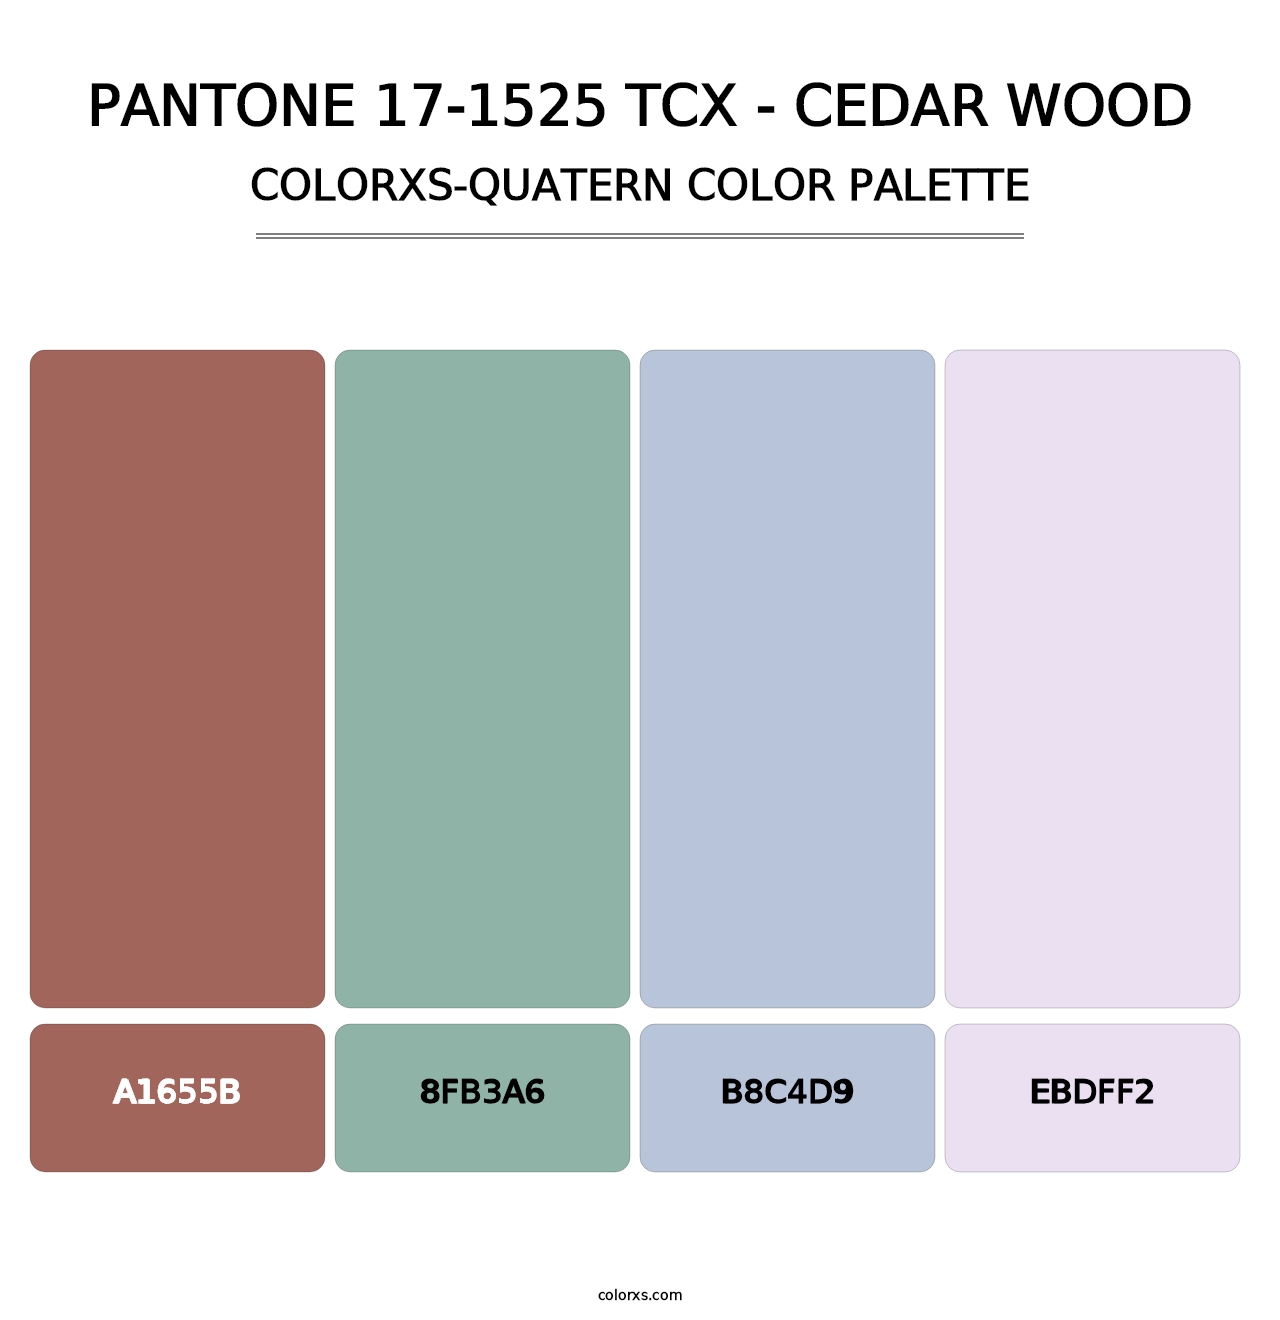 PANTONE 17-1525 TCX - Cedar Wood - Colorxs Quatern Palette